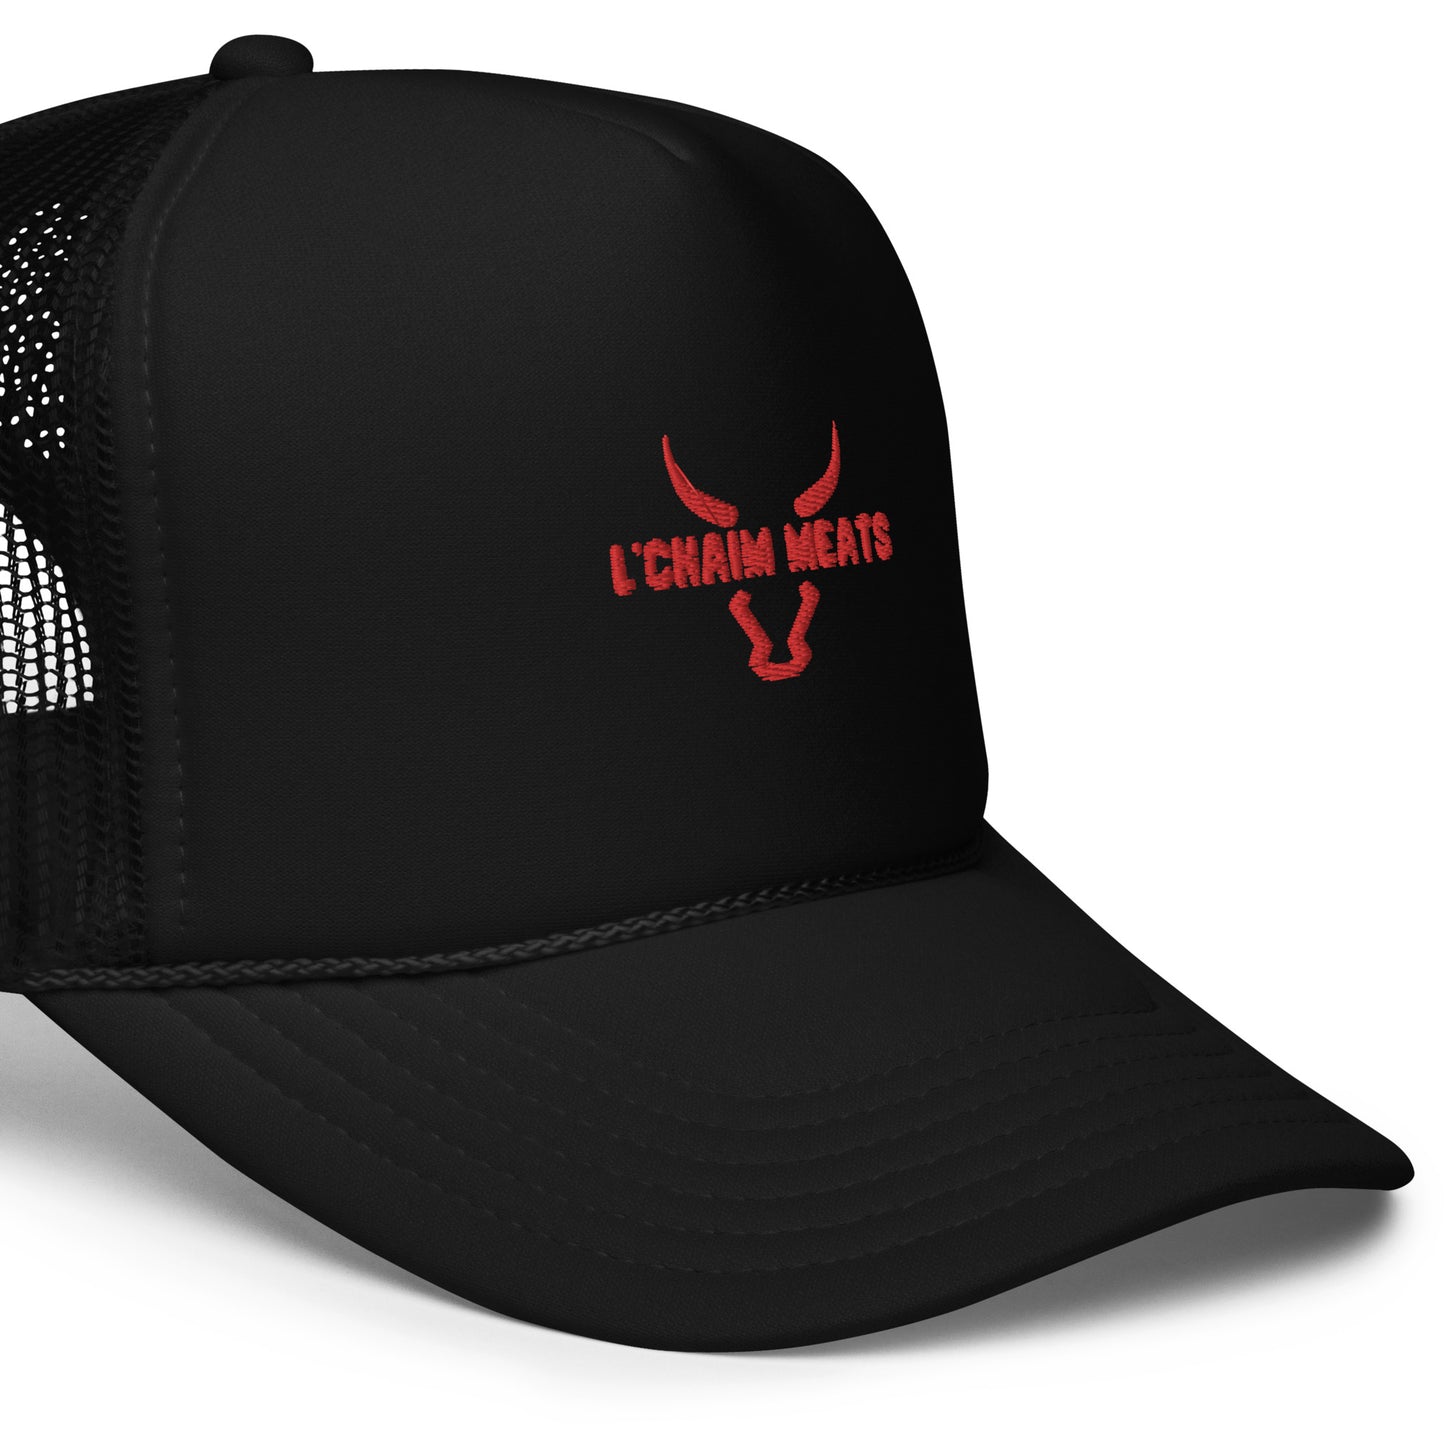 L'Chaim Meats Trucker Hat